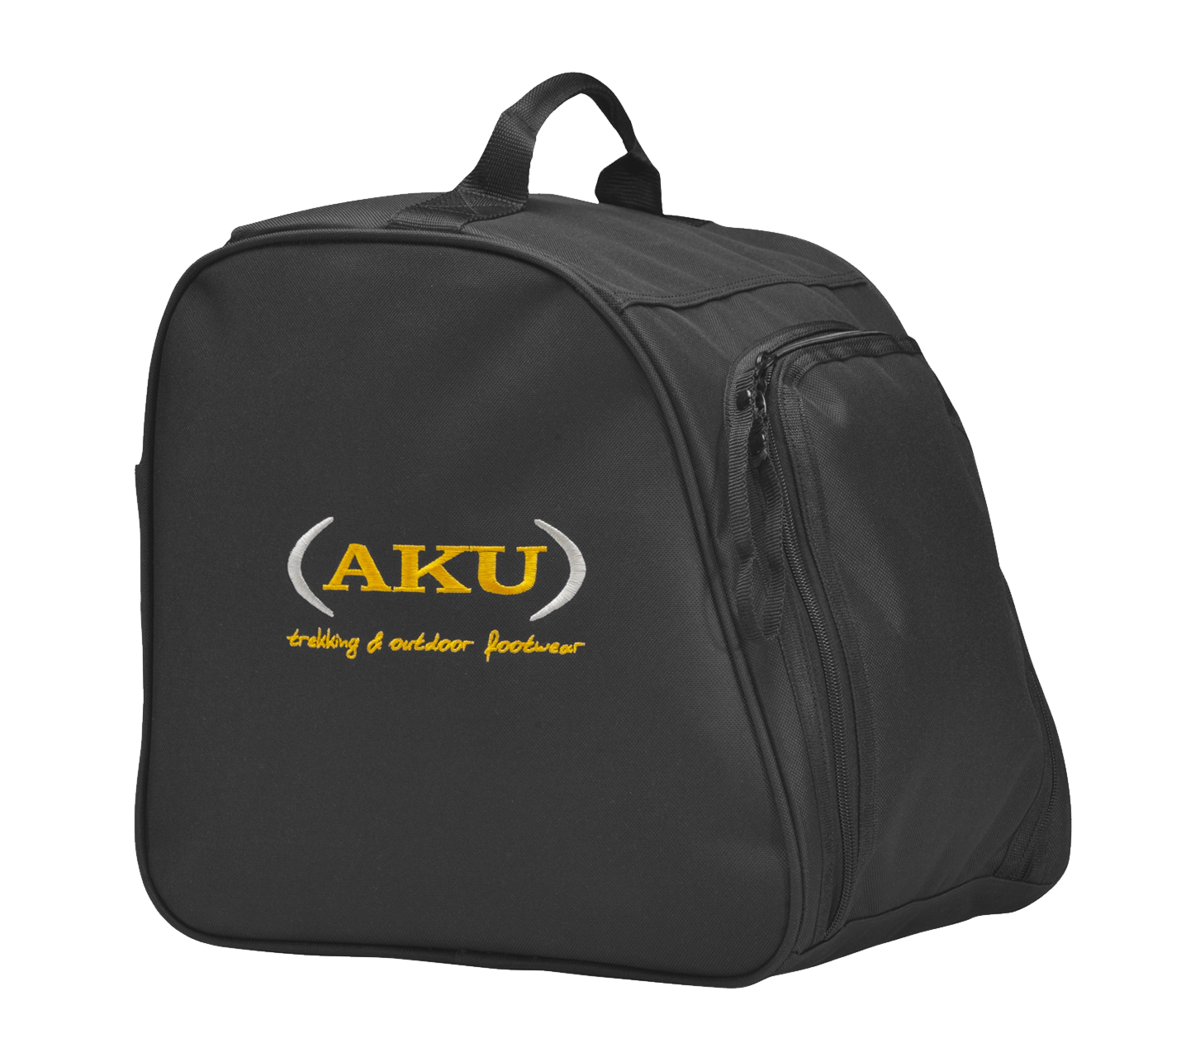 Buy the AKU Shoe Bag online at AKU